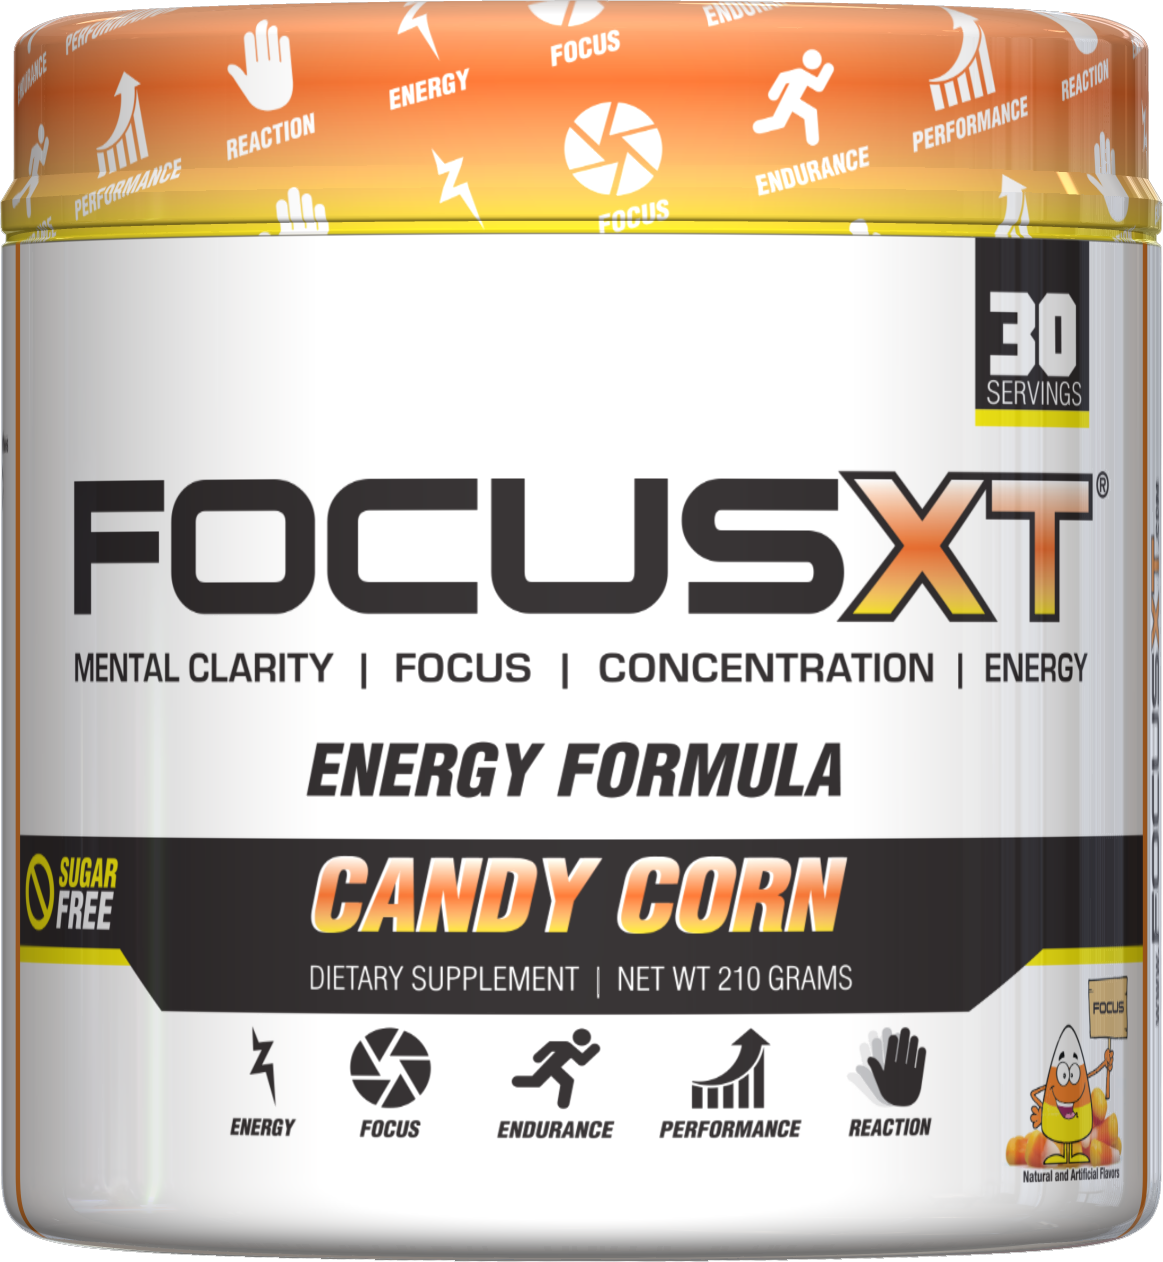 SNS Focus XT Candy Corn